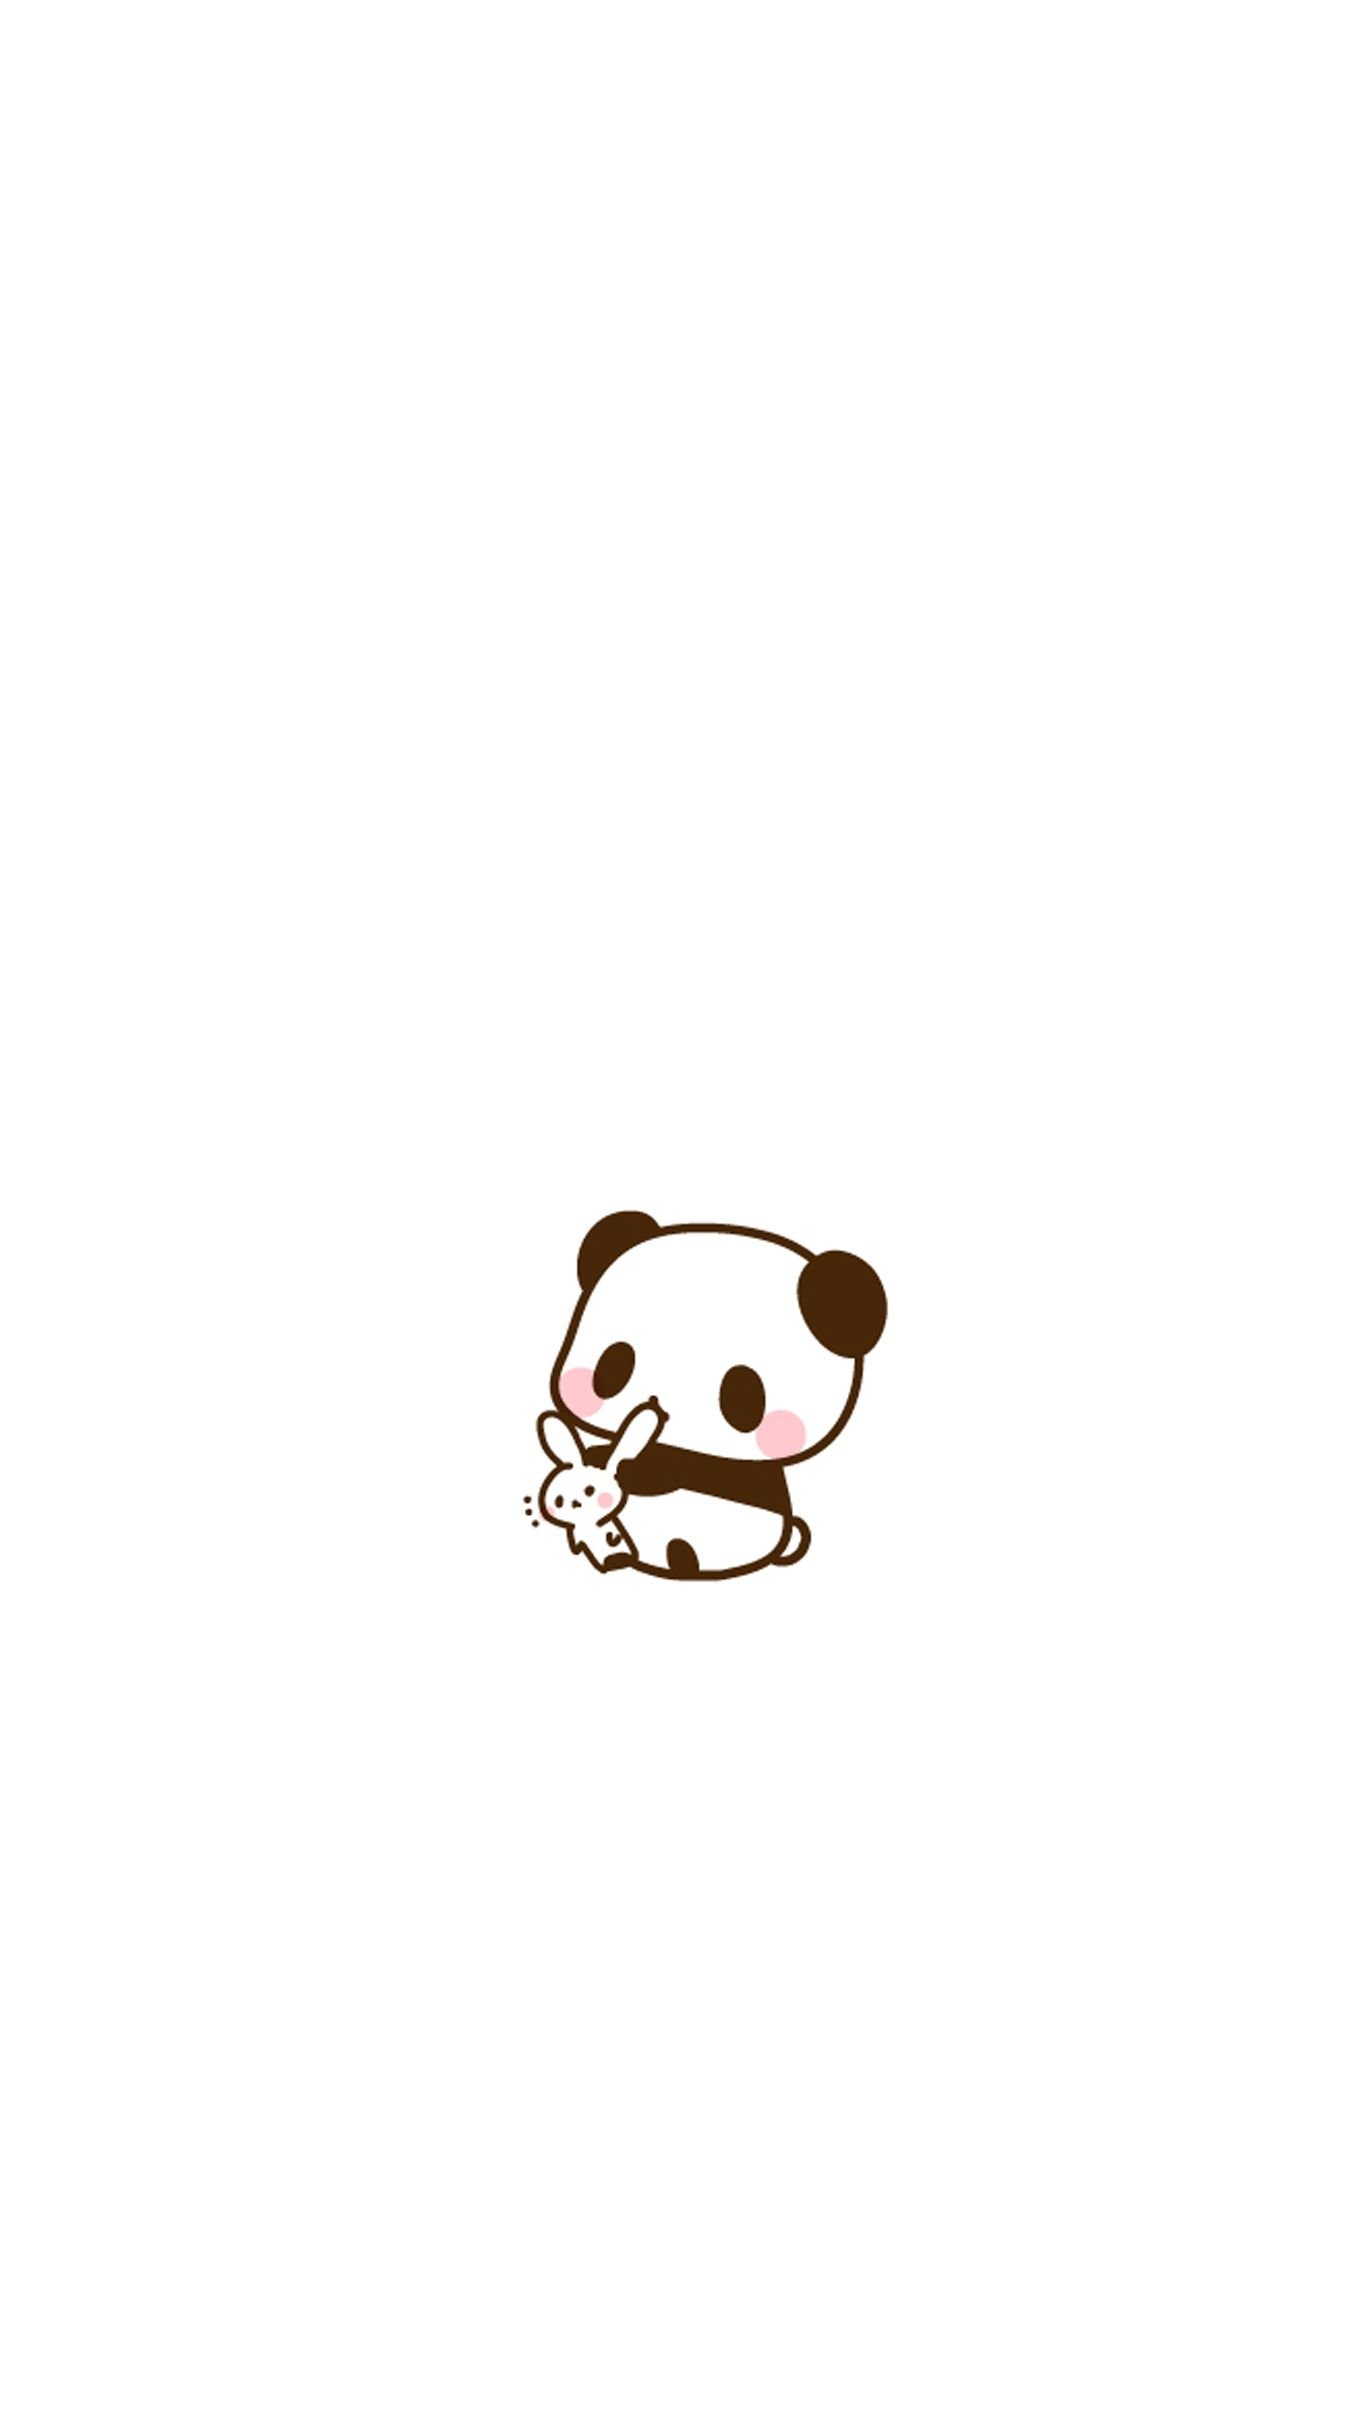 Cute Kawaii Panda Wallpaper APK for Android Download